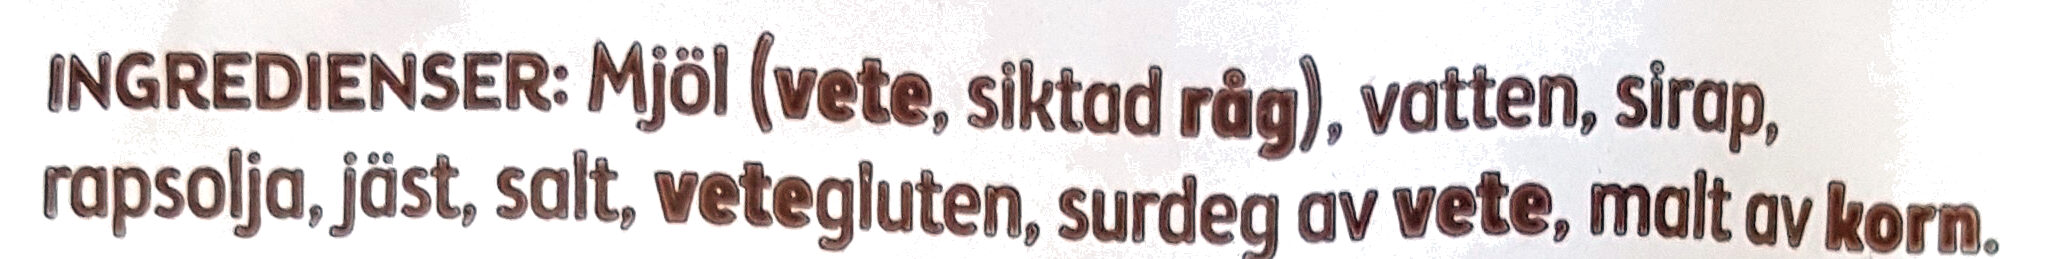 Skogaholms Originalrost,Skivad - Ingredienser